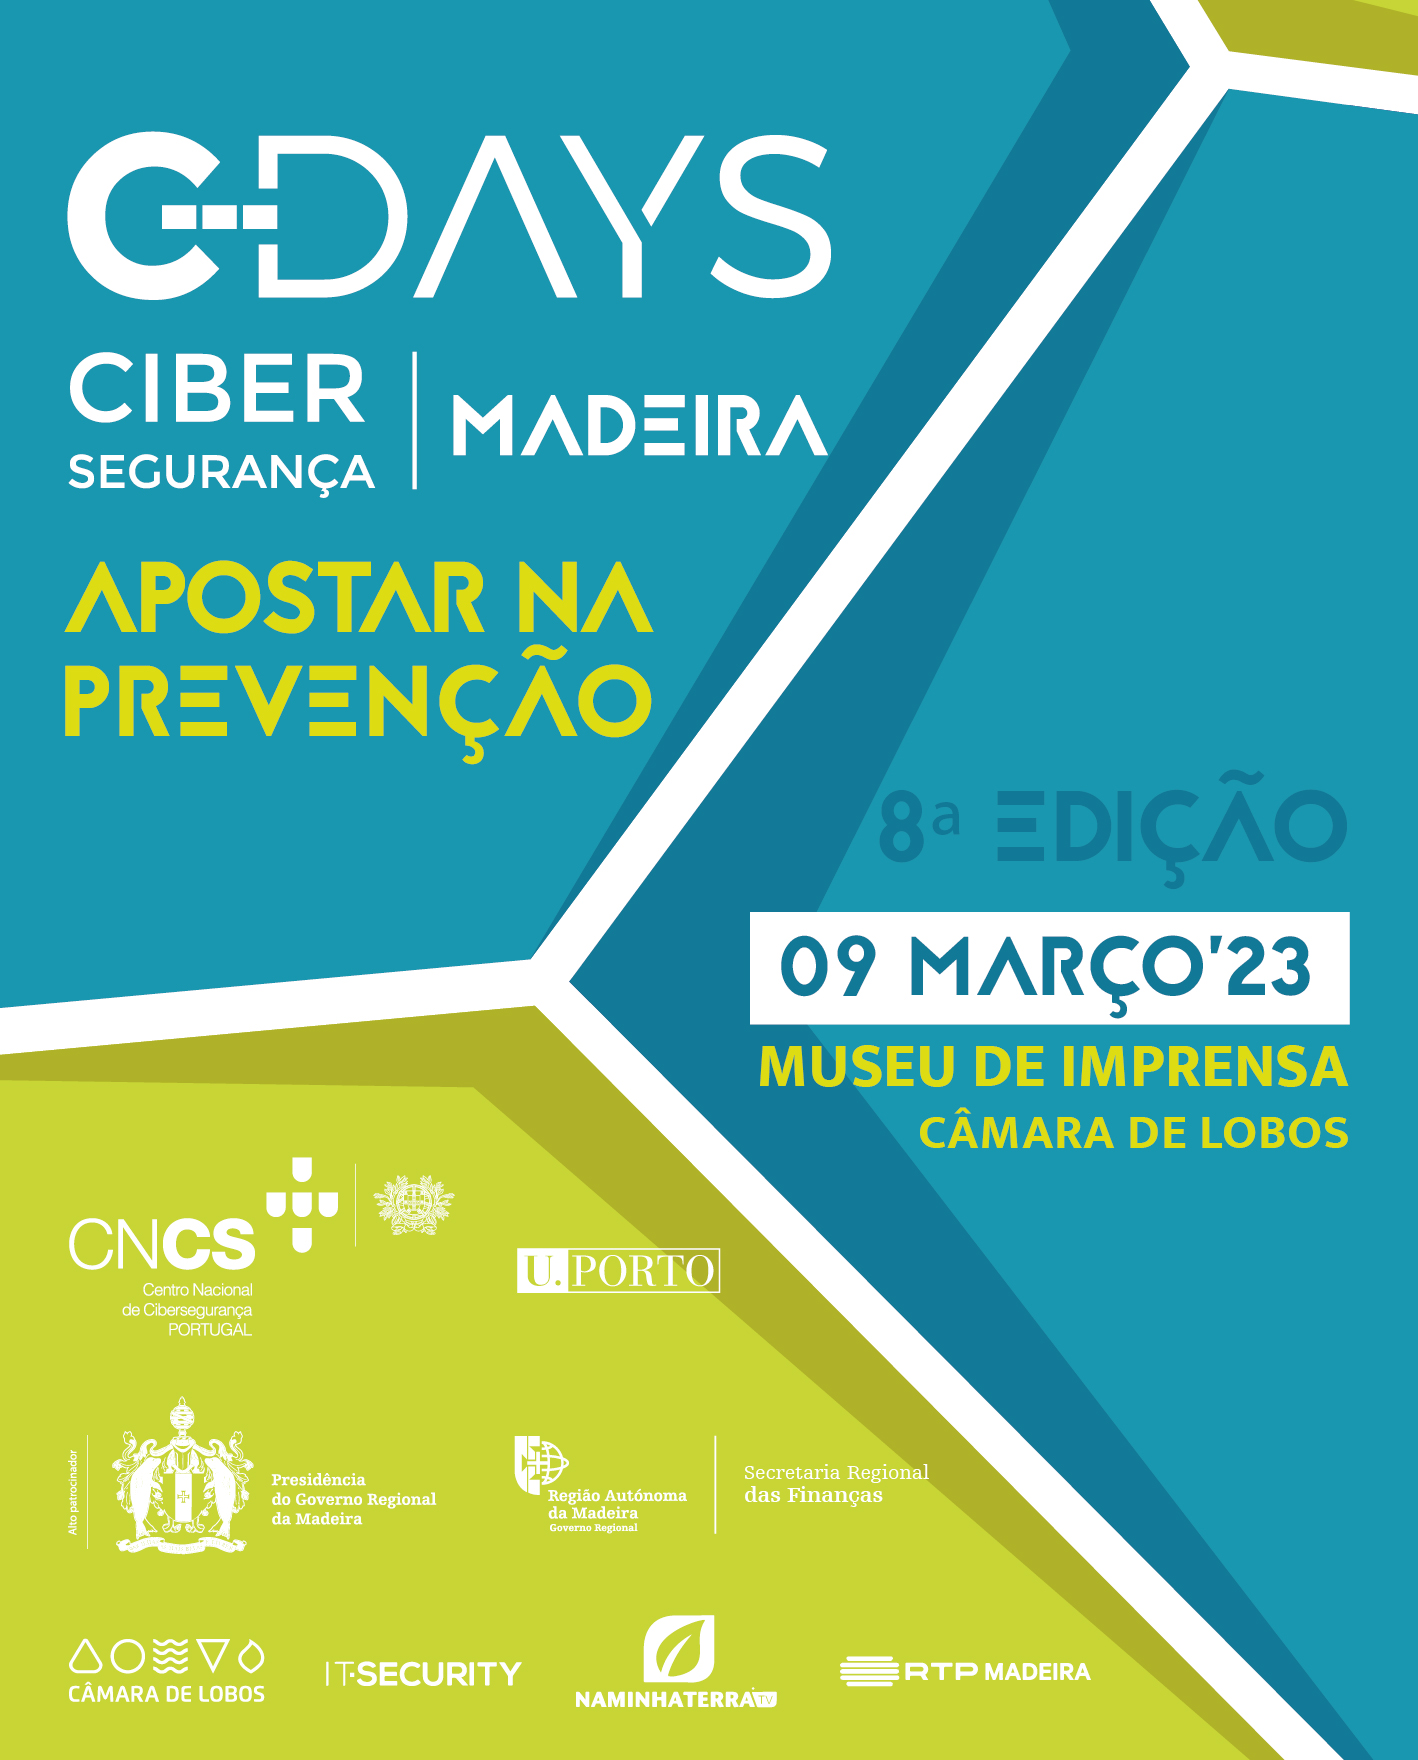 C-DAYS - Evento sobre Cibersegurança